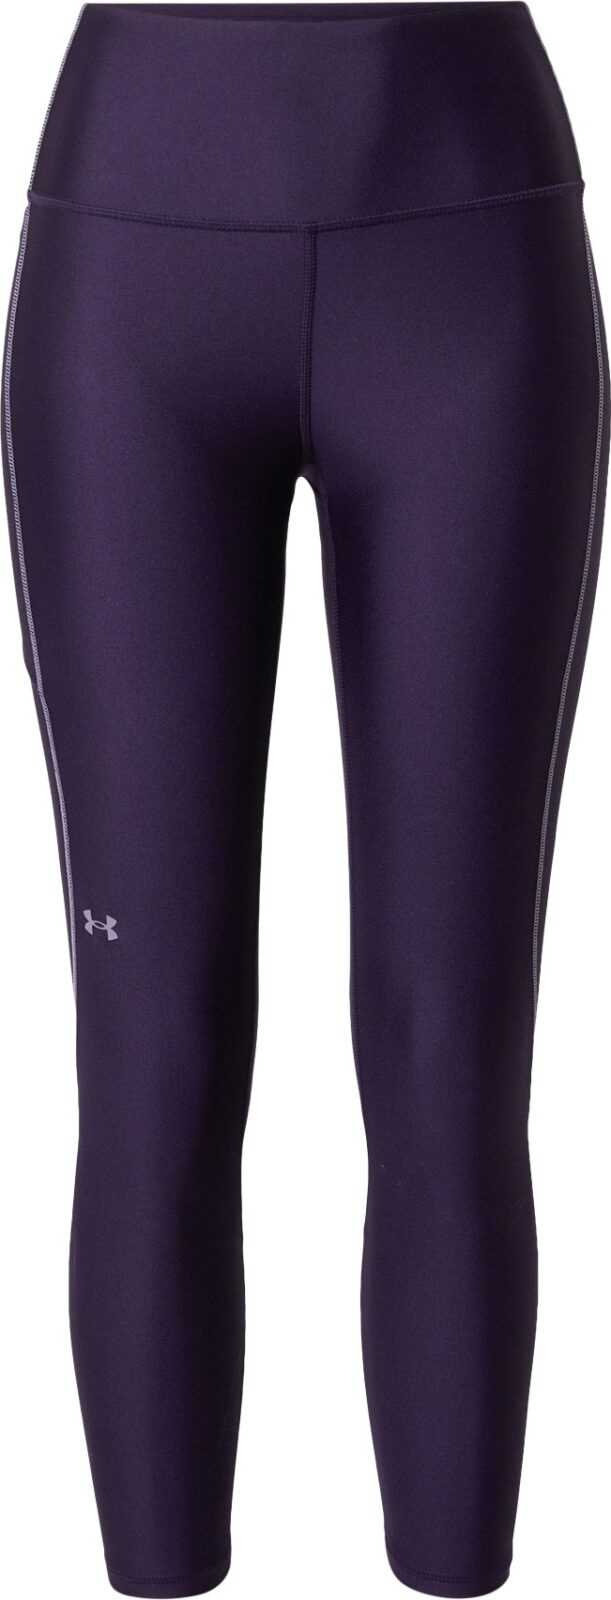 UNDER ARMOUR Sportovní kalhoty 'HeatGear Armour' fialová / černá / bílá